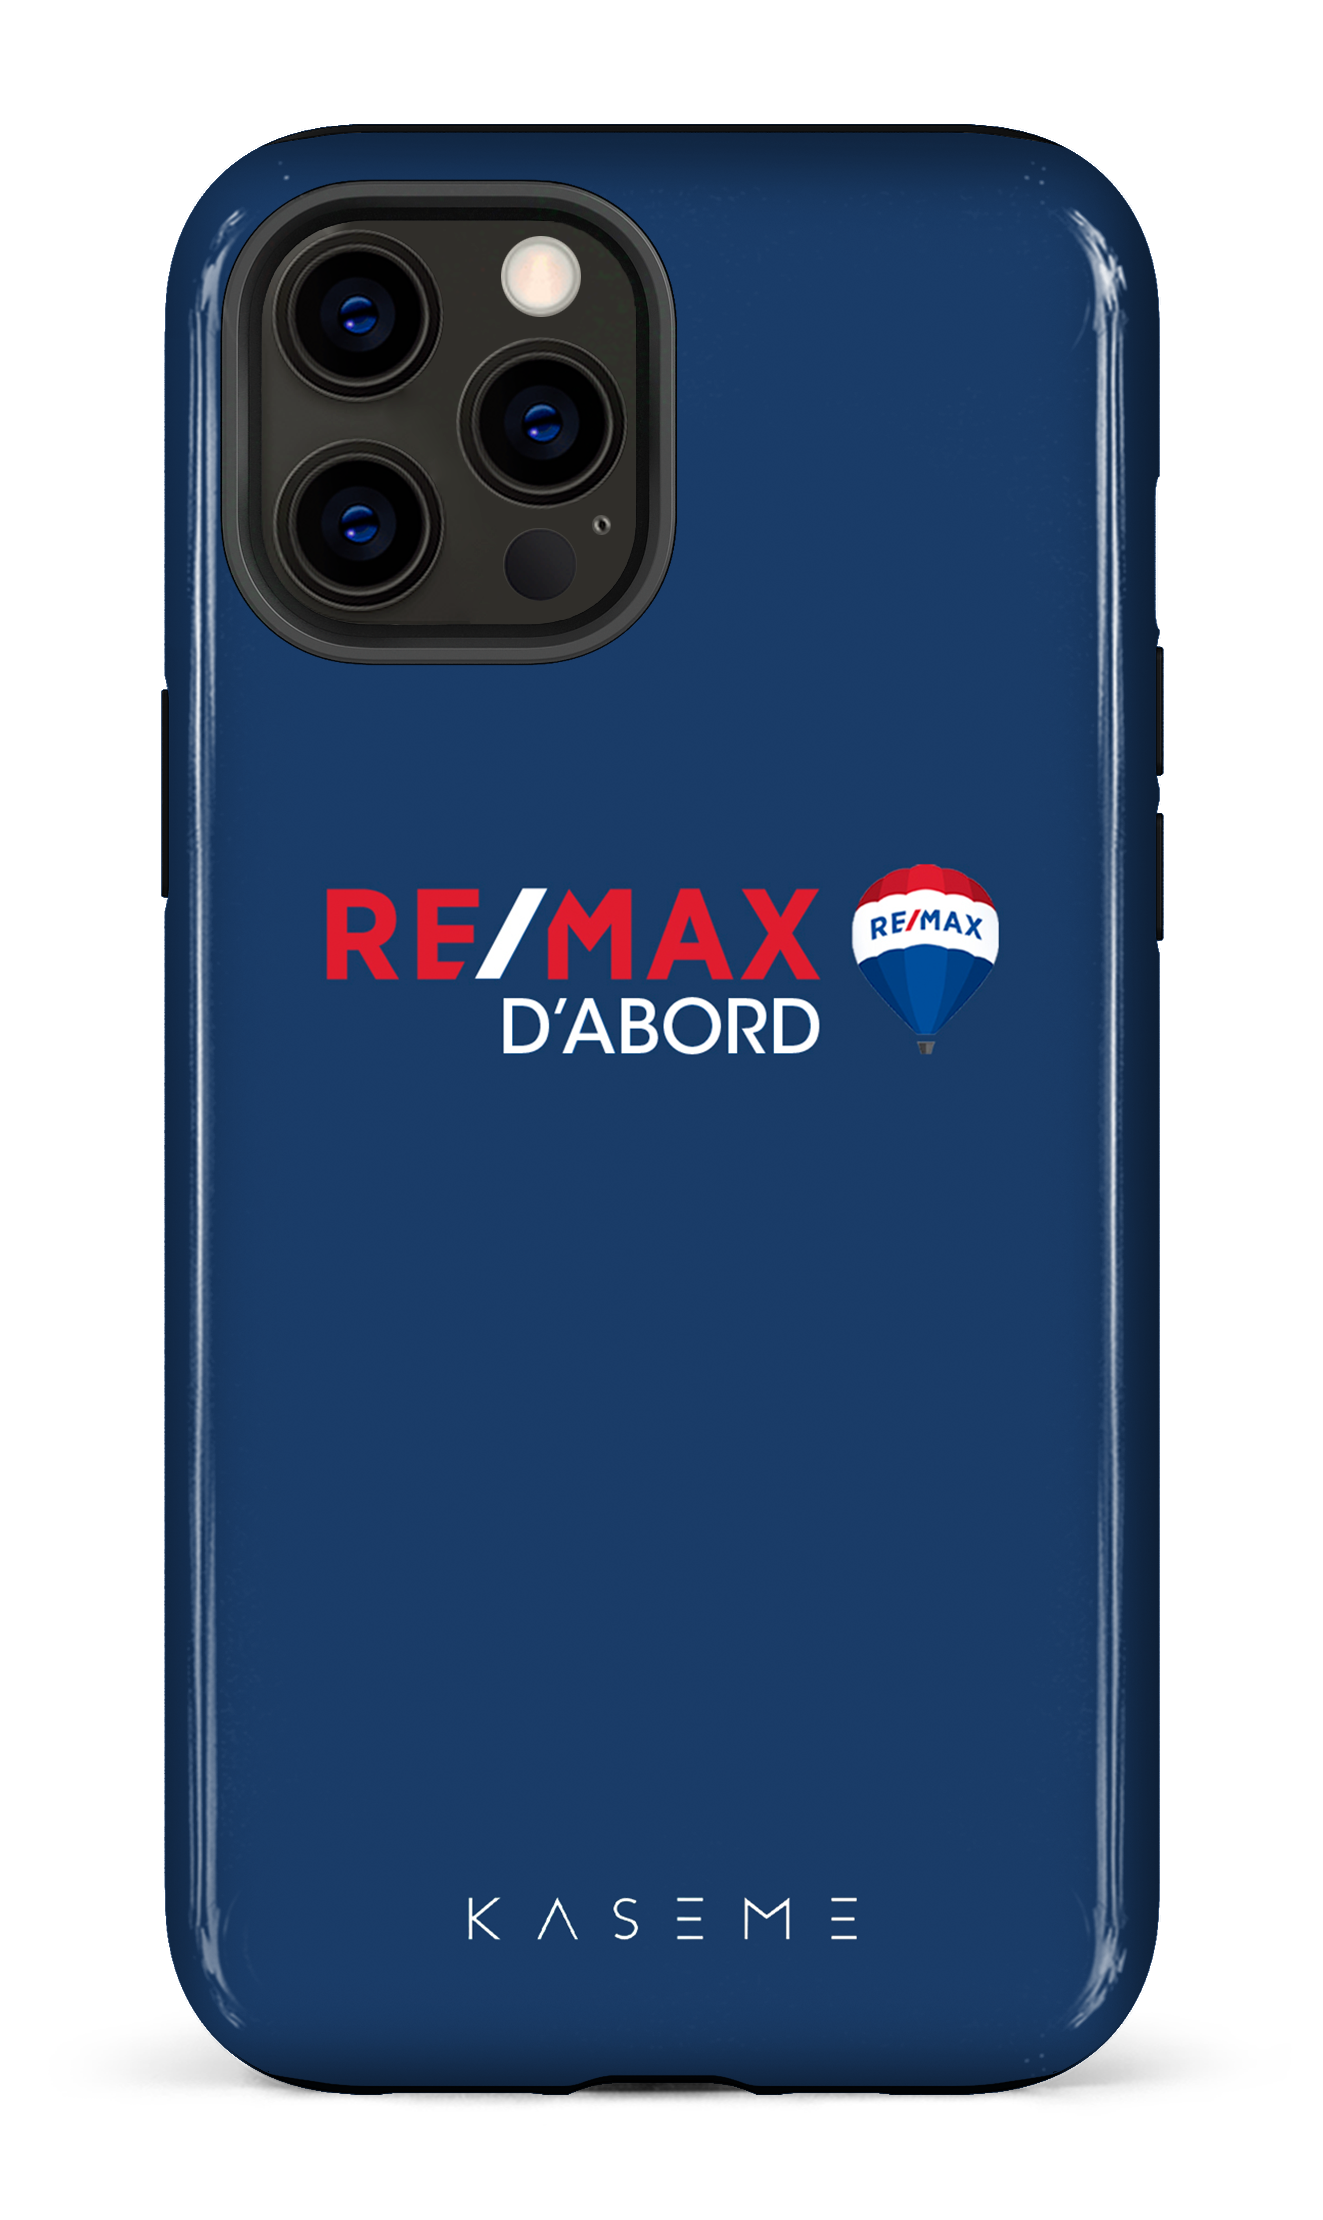 Remax D'abord Bleu - iPhone 12 Pro Max